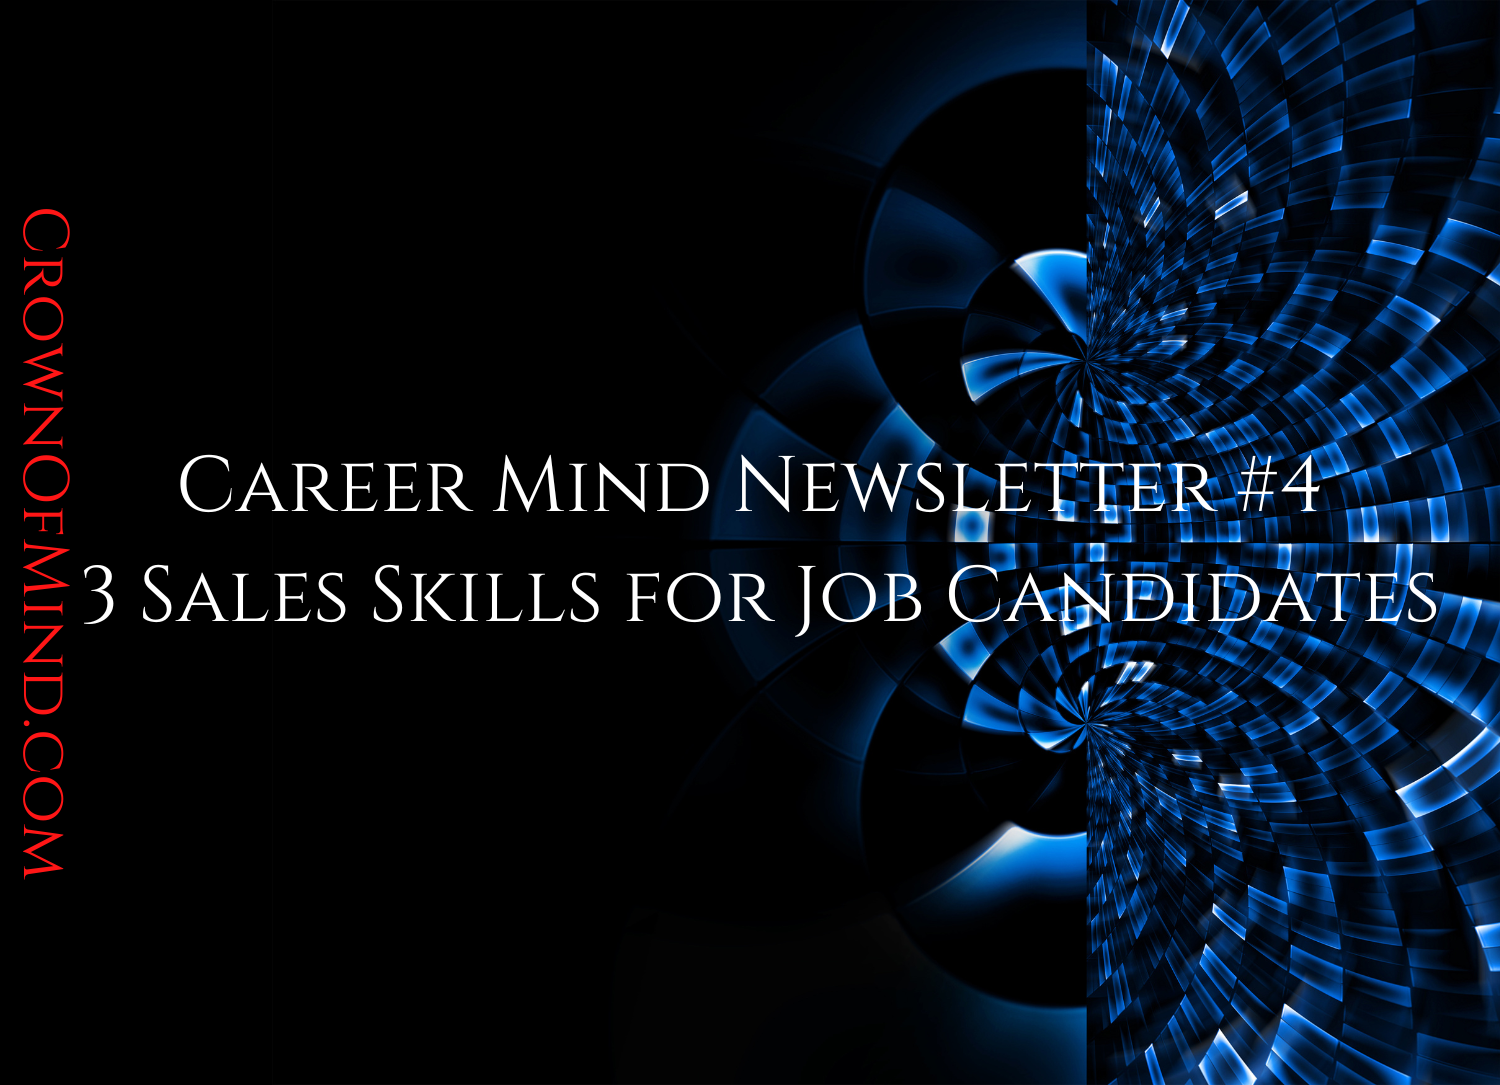 Career Mind Newsletter #4 – 3 Sales Skills for Job Candidates